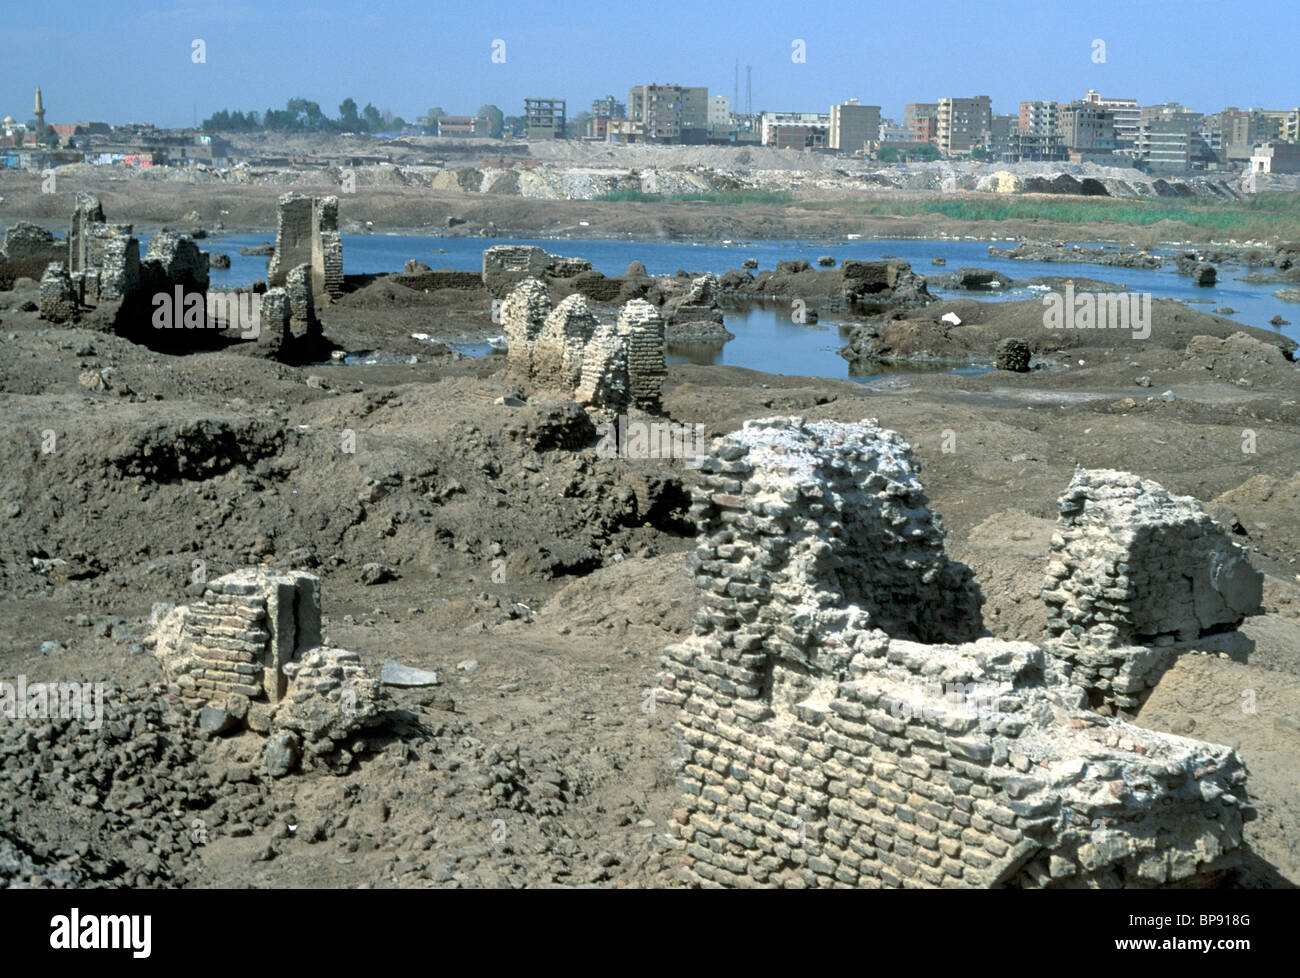 Ruines de Misr al-Fustat, c.641CE, fondations du site original du Caire, Égypte Banque D'Images